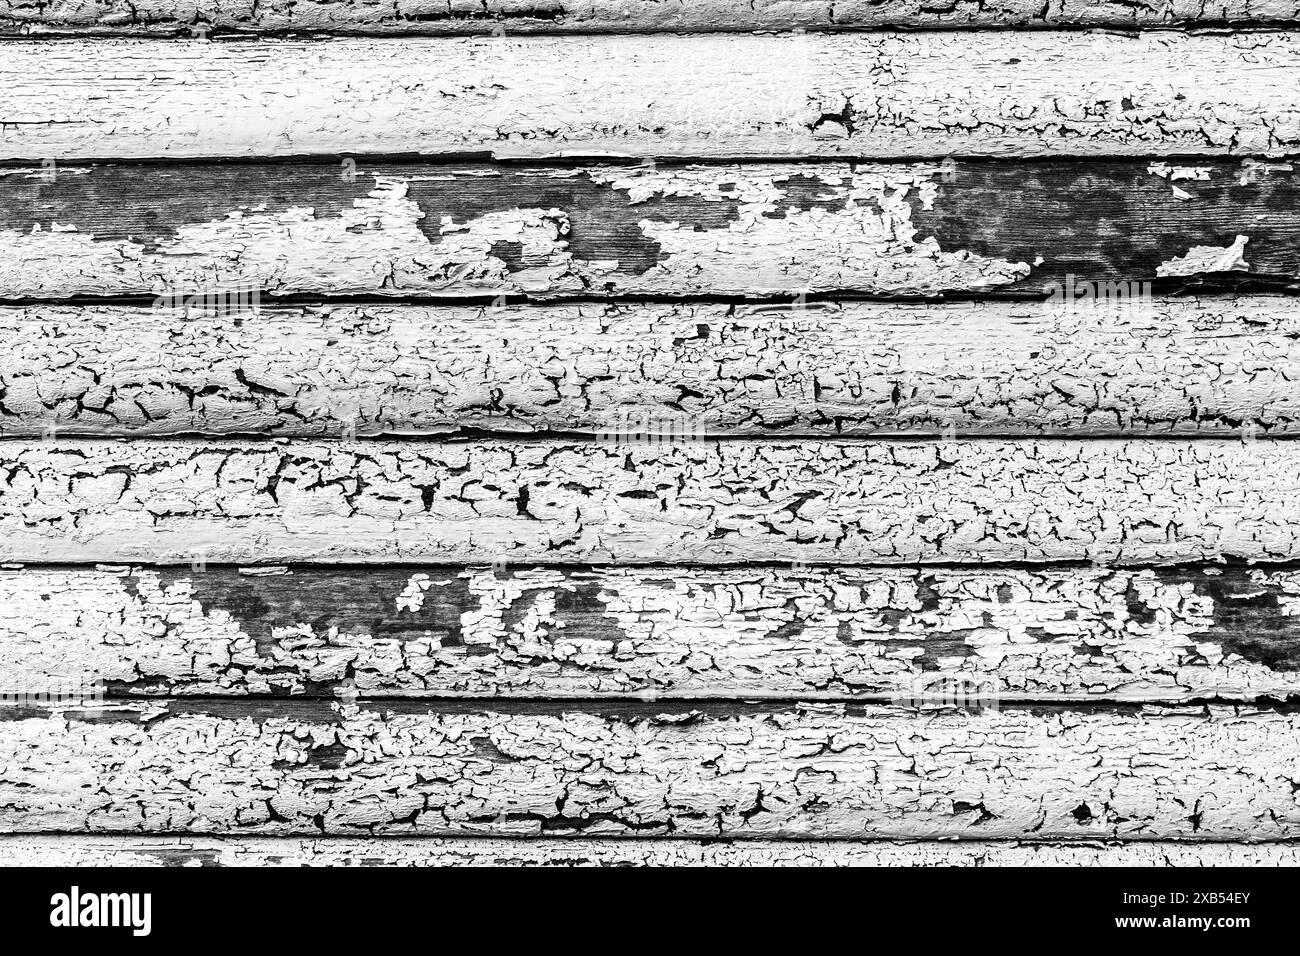 Decaying Paint Anversa, Belgio. Decomposizione e mancata manutenzione della vernice, su un diaframma della finestra, a causa delle influenze atmosferiche. Anversa, Belgio. Anversa Centrum Provincie Anversa Belgie Copyright: XGuidoxKoppesxPhotox Foto Stock